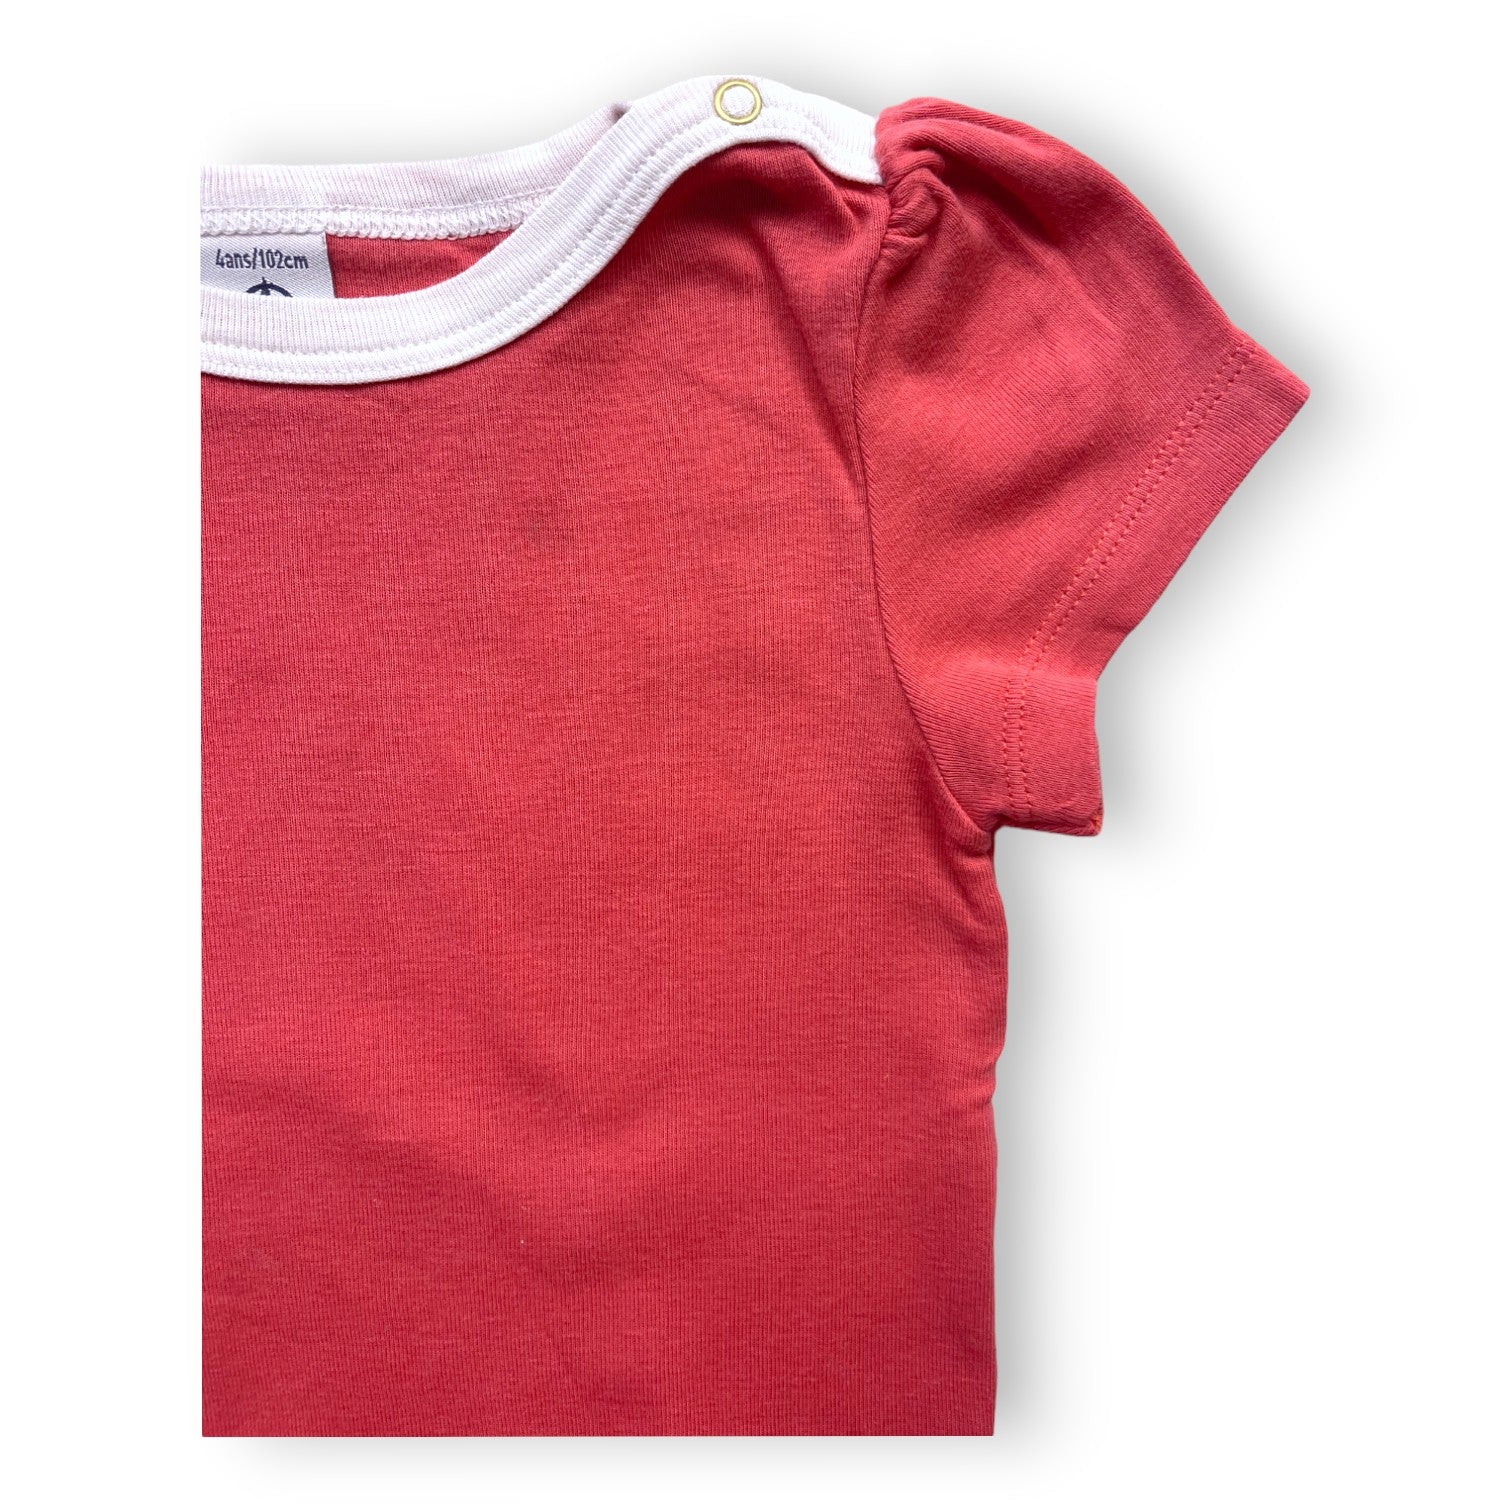 PETIT BATEAU - T shirt rose liseré blanc - 4 ans